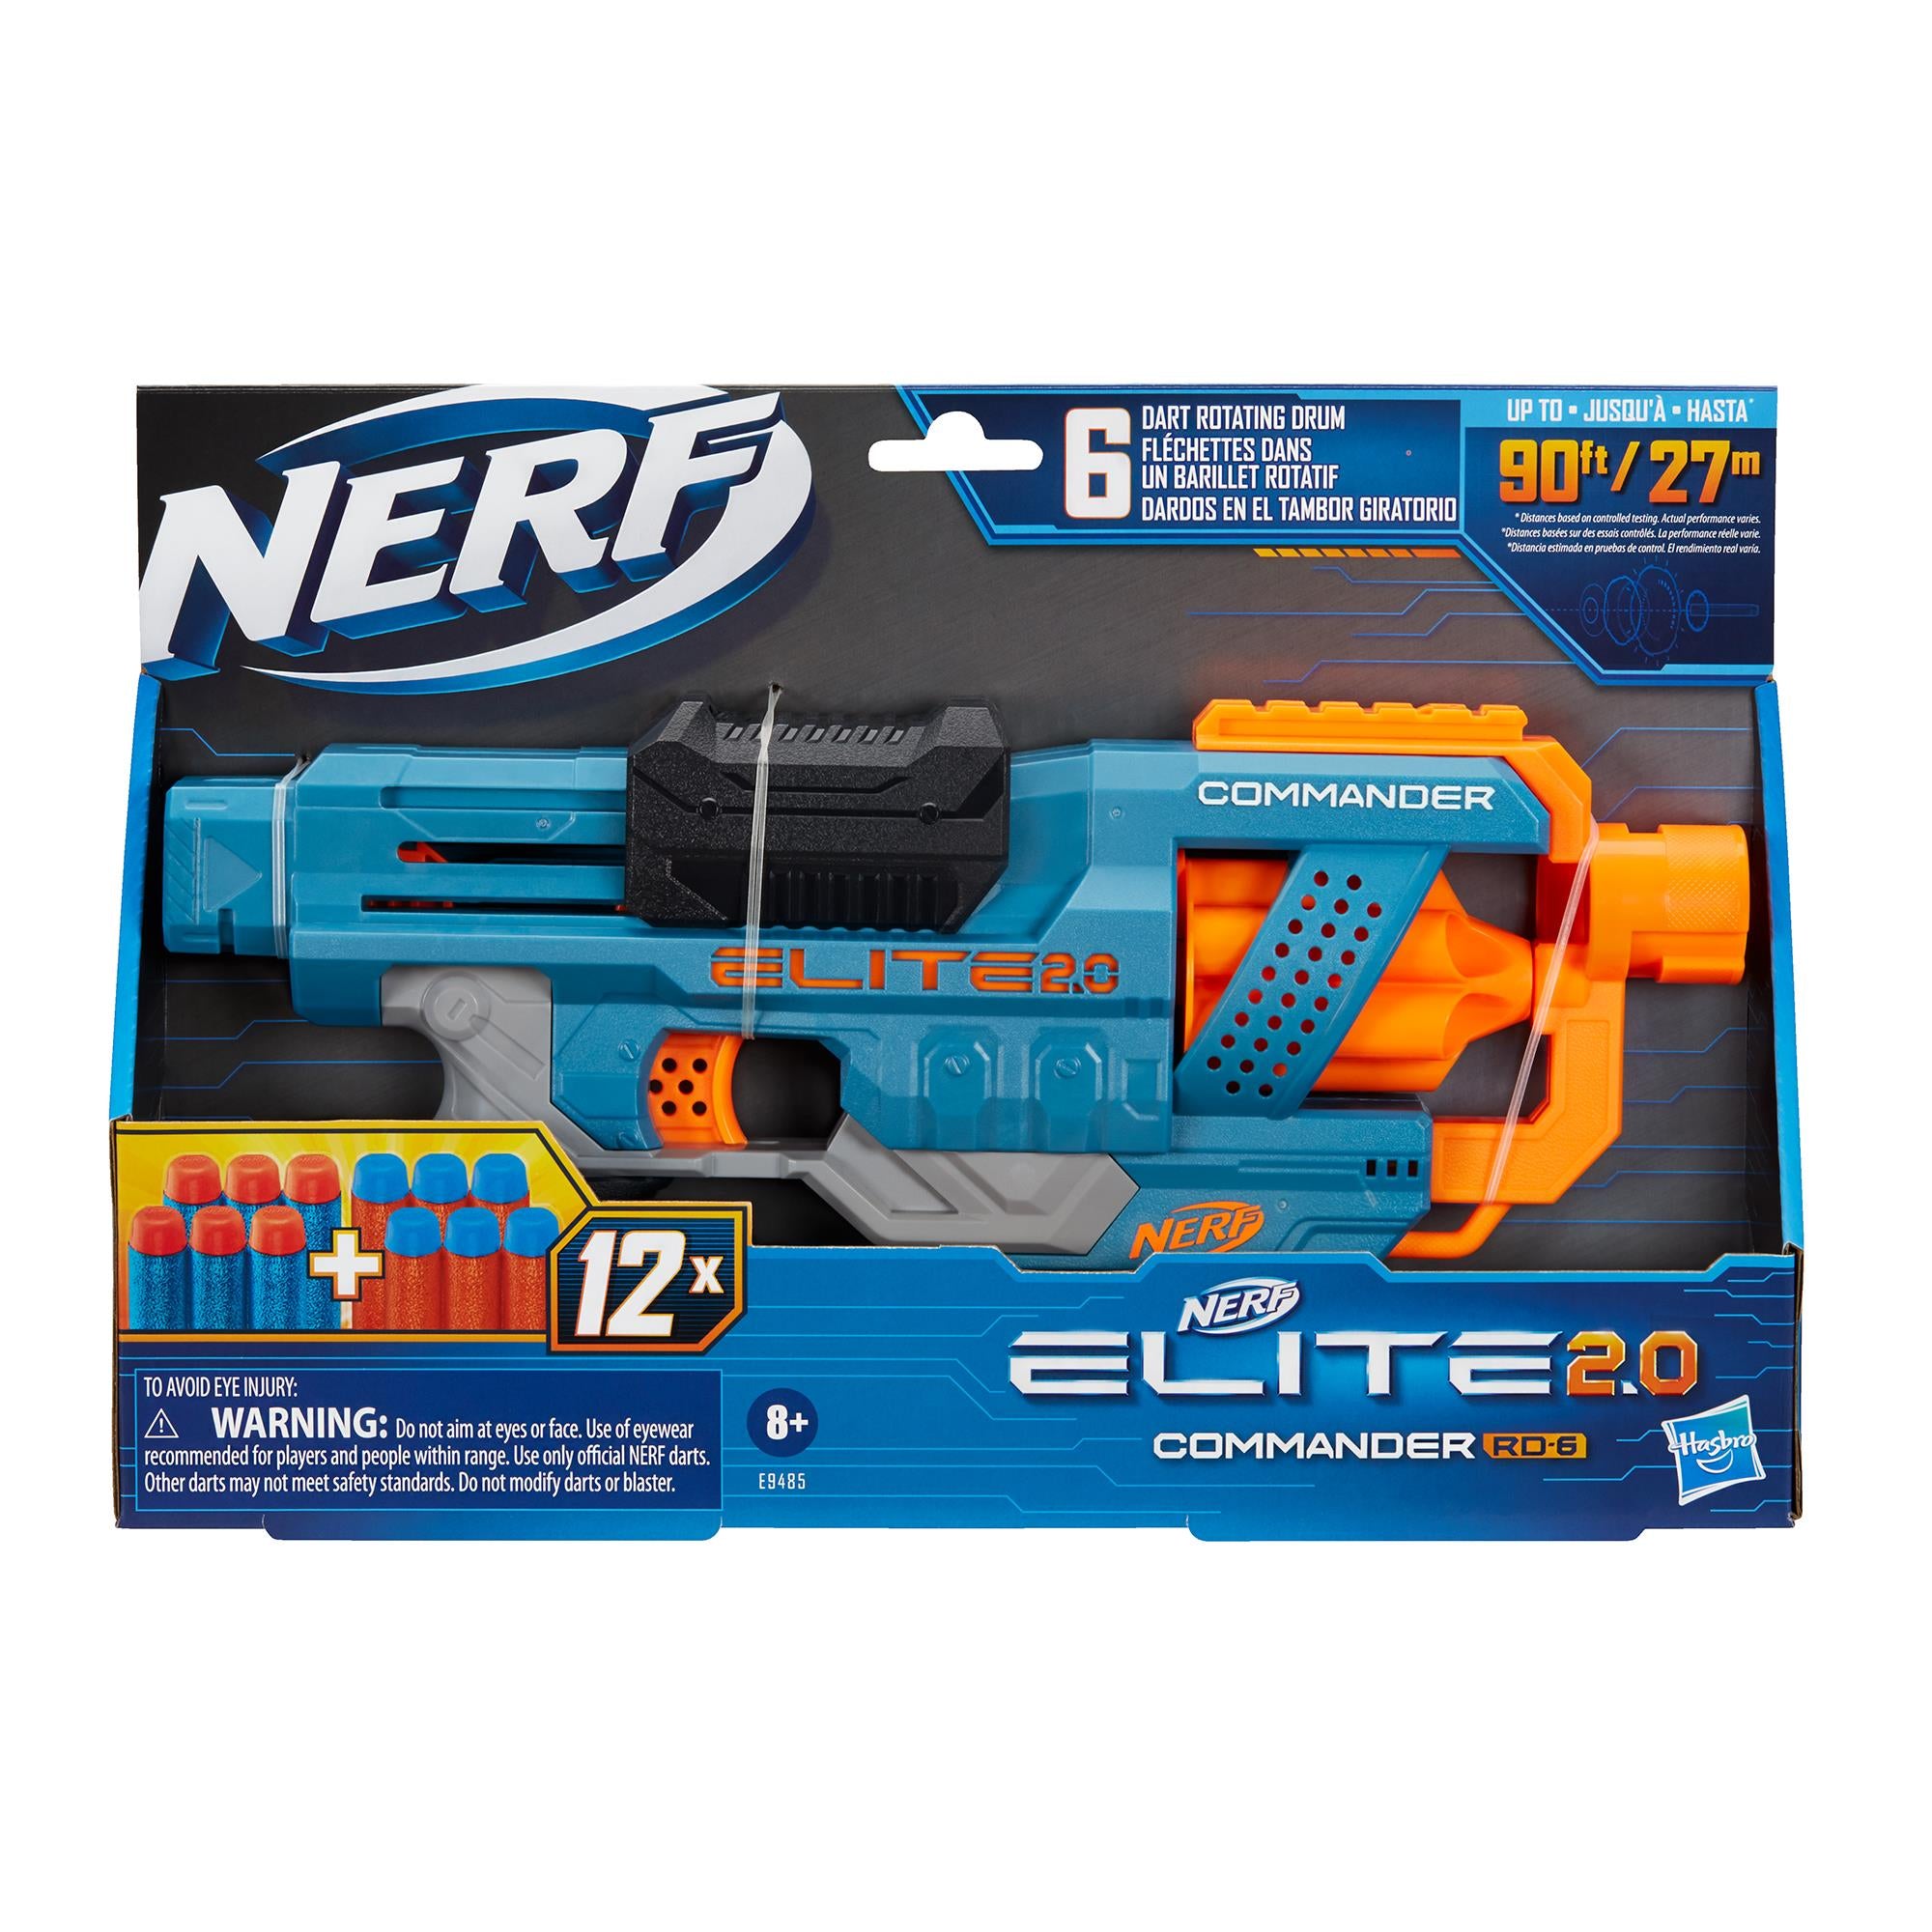 NERF GUN Elite 2.0 Commander RD-6 - _MS, GIFT, HIDE BTS, LIAN TONG, TOYS & GAMES